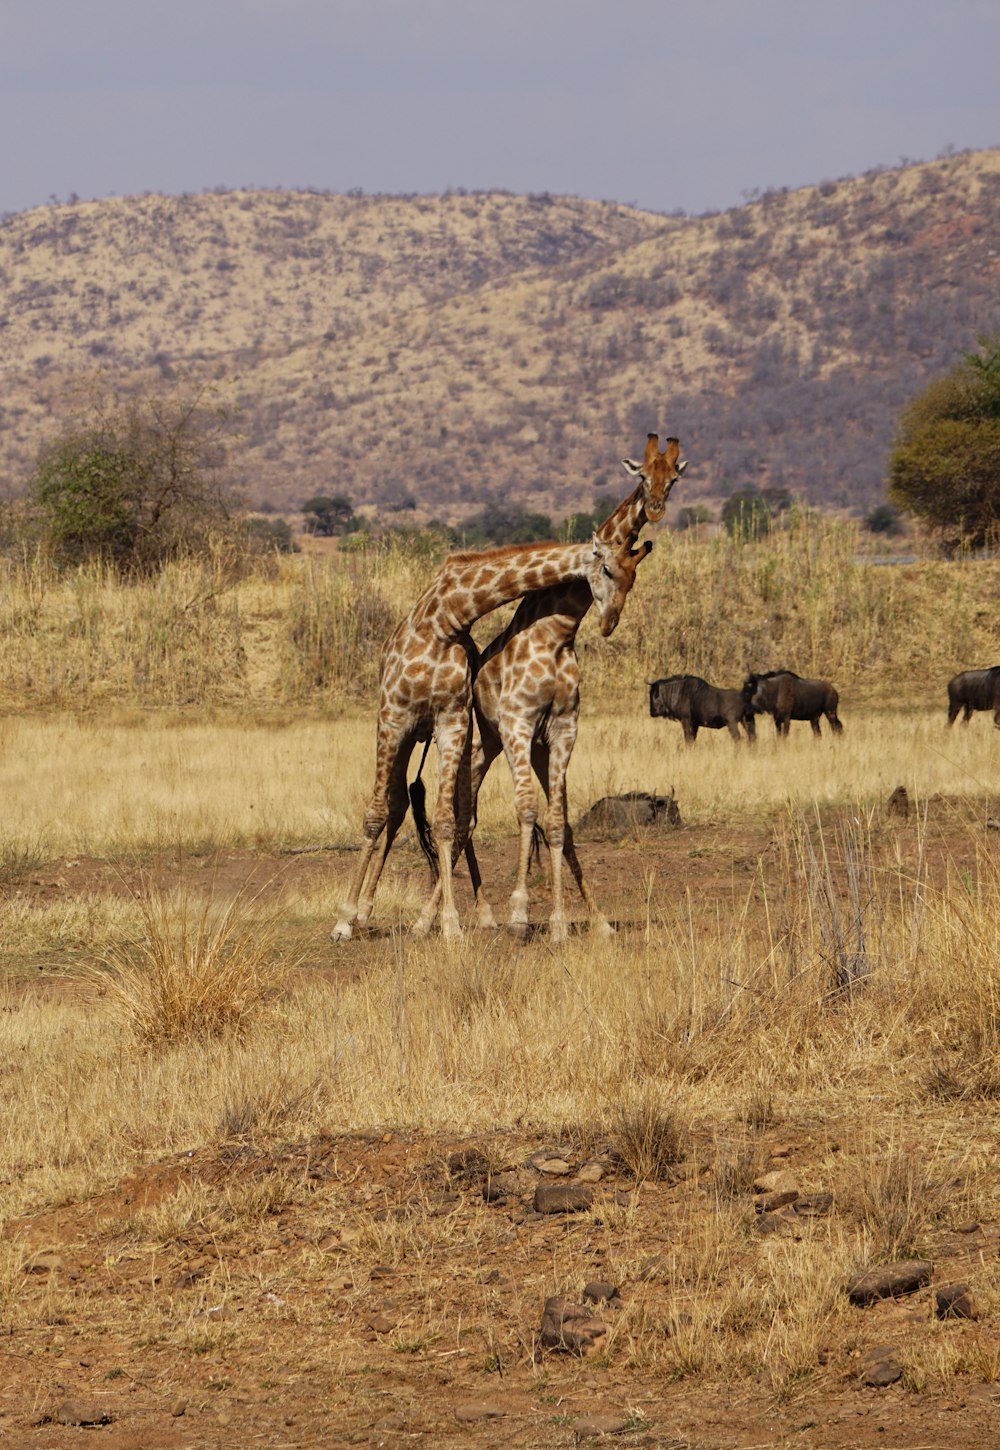 giraffe near mountain during daytime